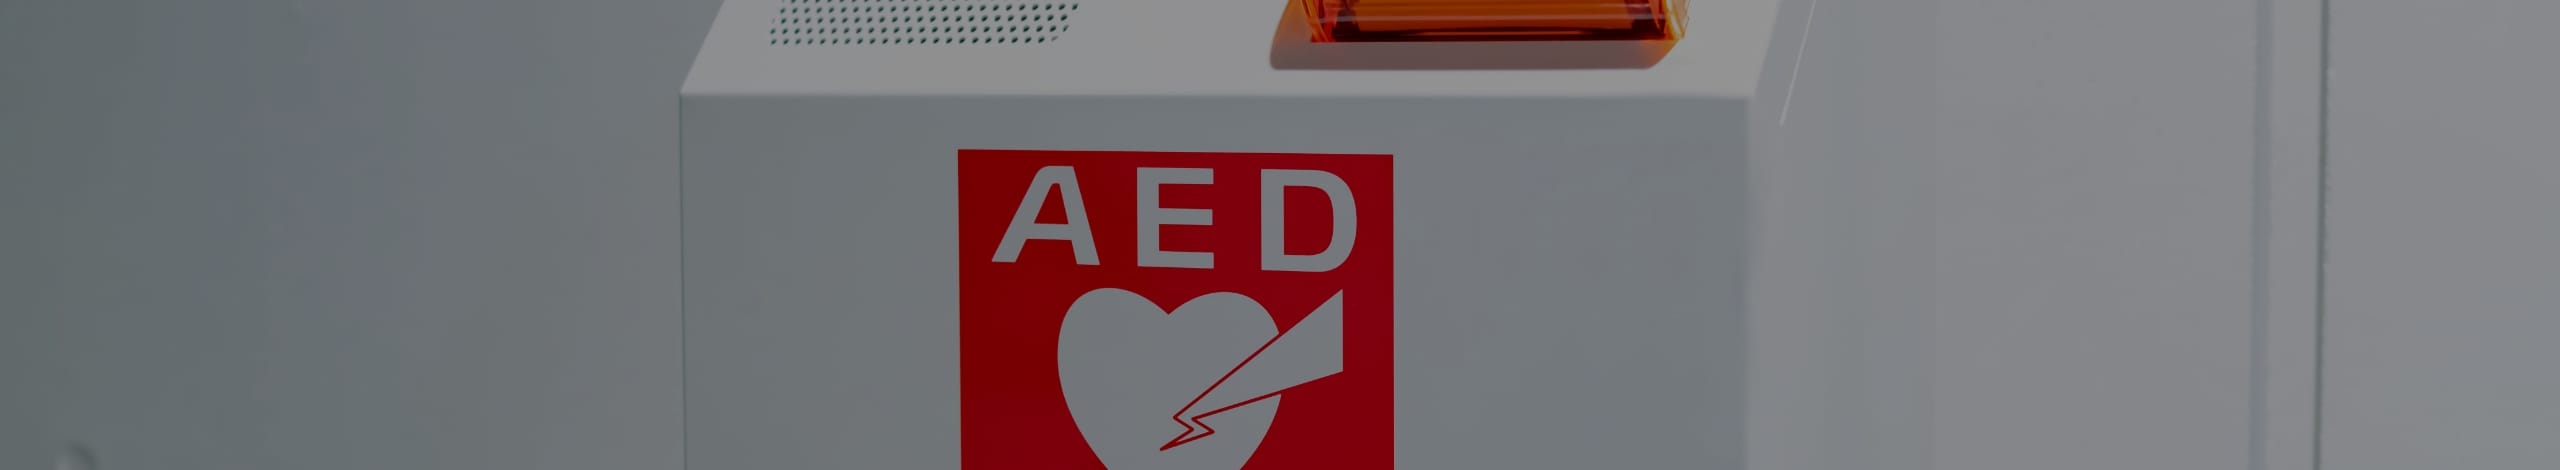 減らせ突然死プロジェクト（AED財団の前身となった取組）